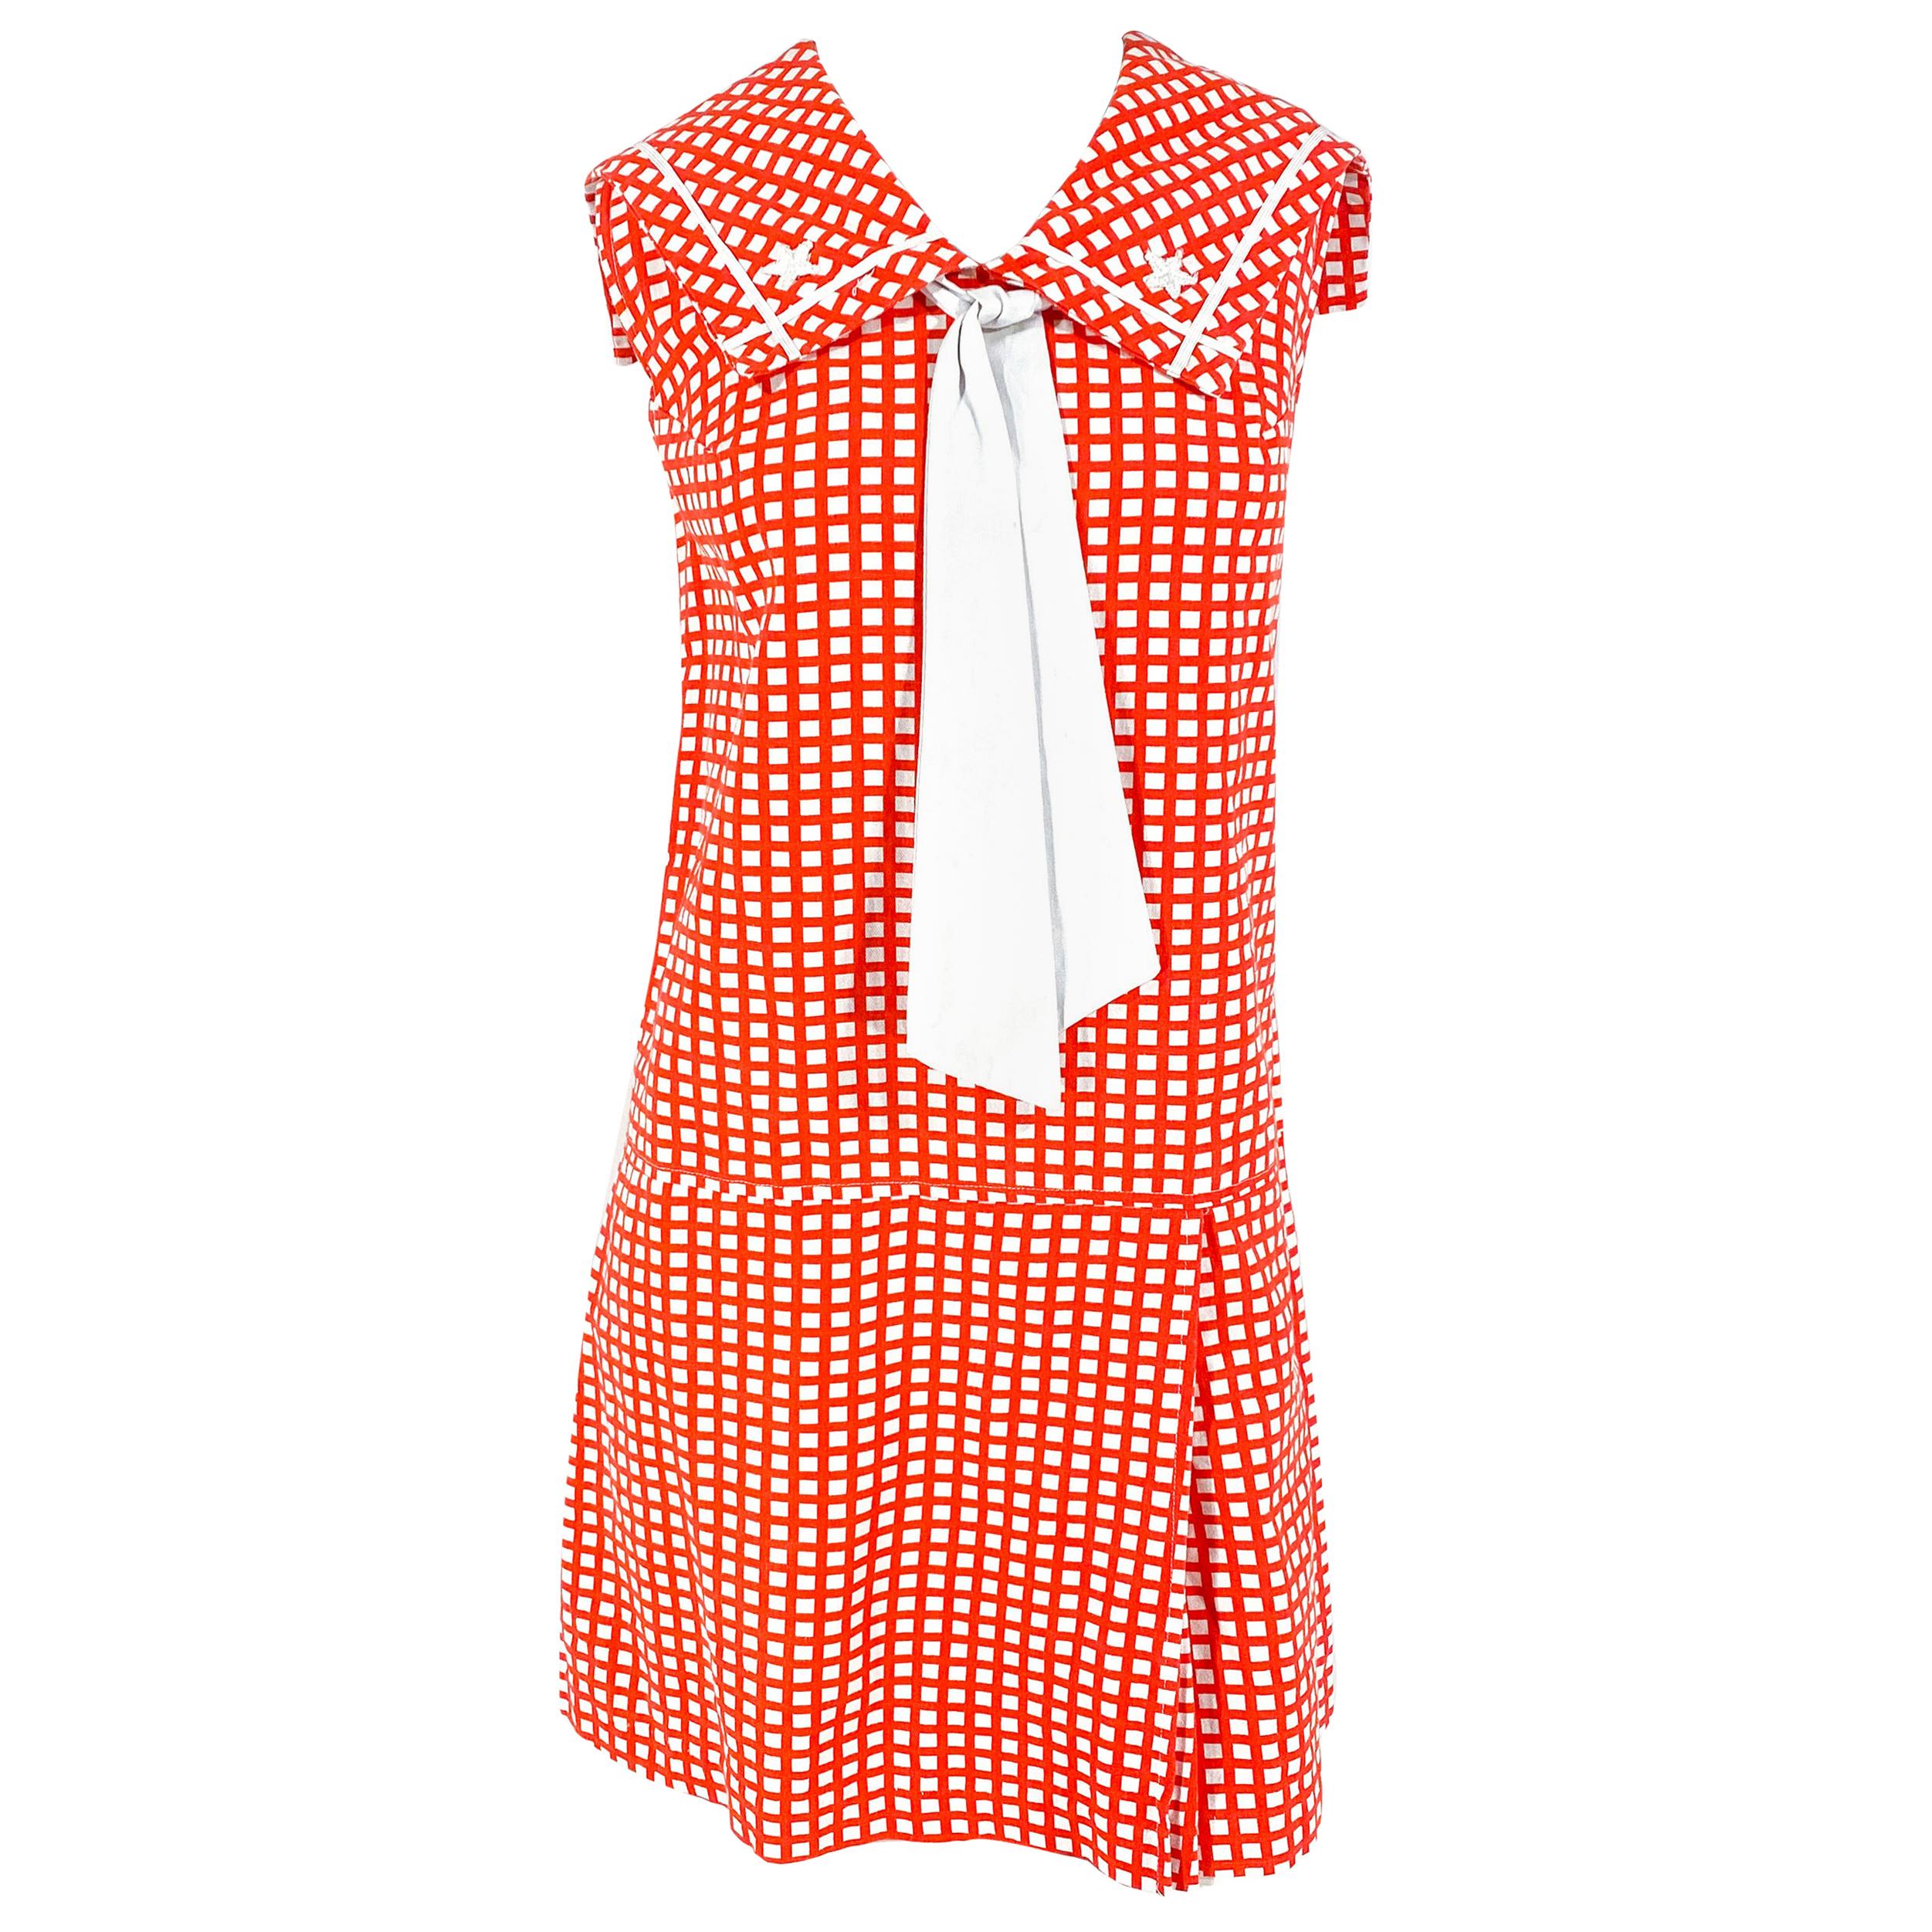 Weiches rot-weiß bedrucktes Skort-Kleid aus den 1960er Jahren